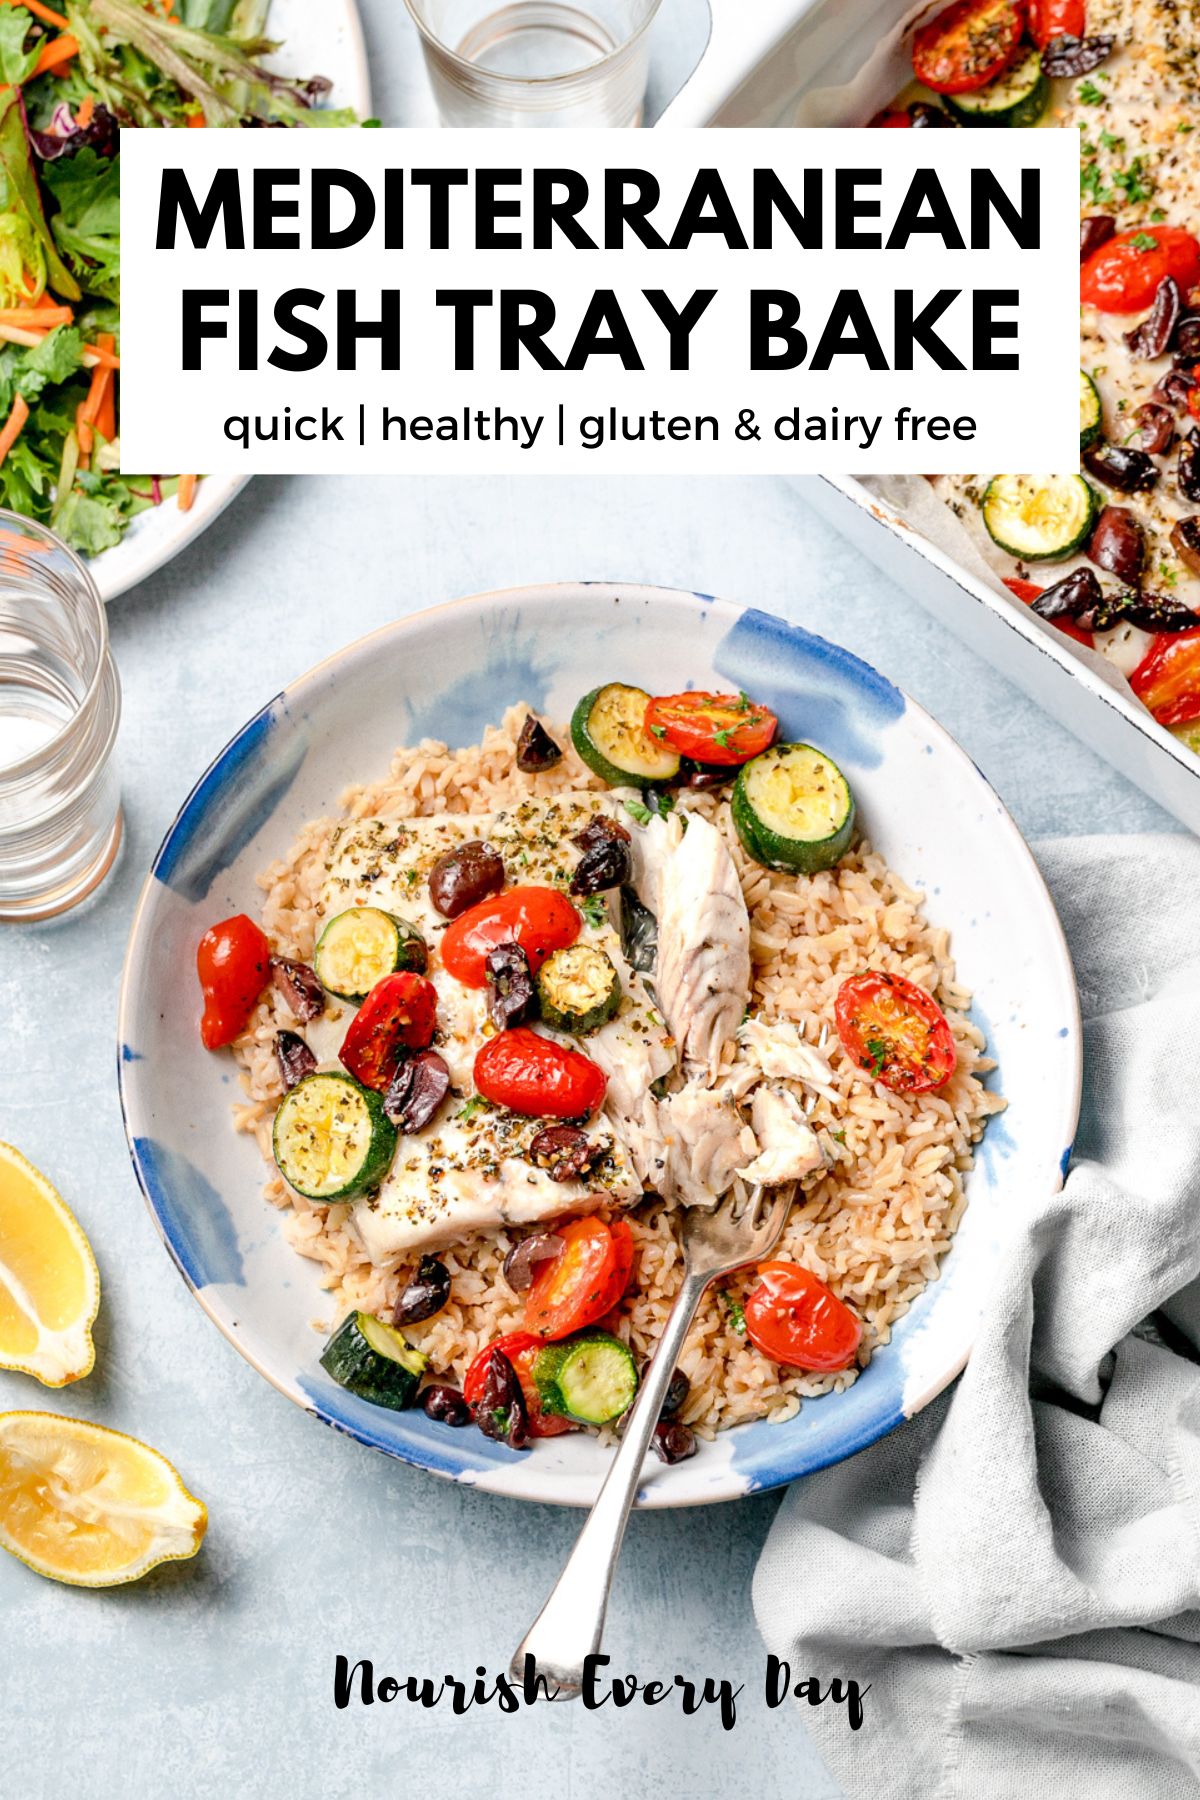 Mediterranean Fish Tray Bake Recipe Pin Image